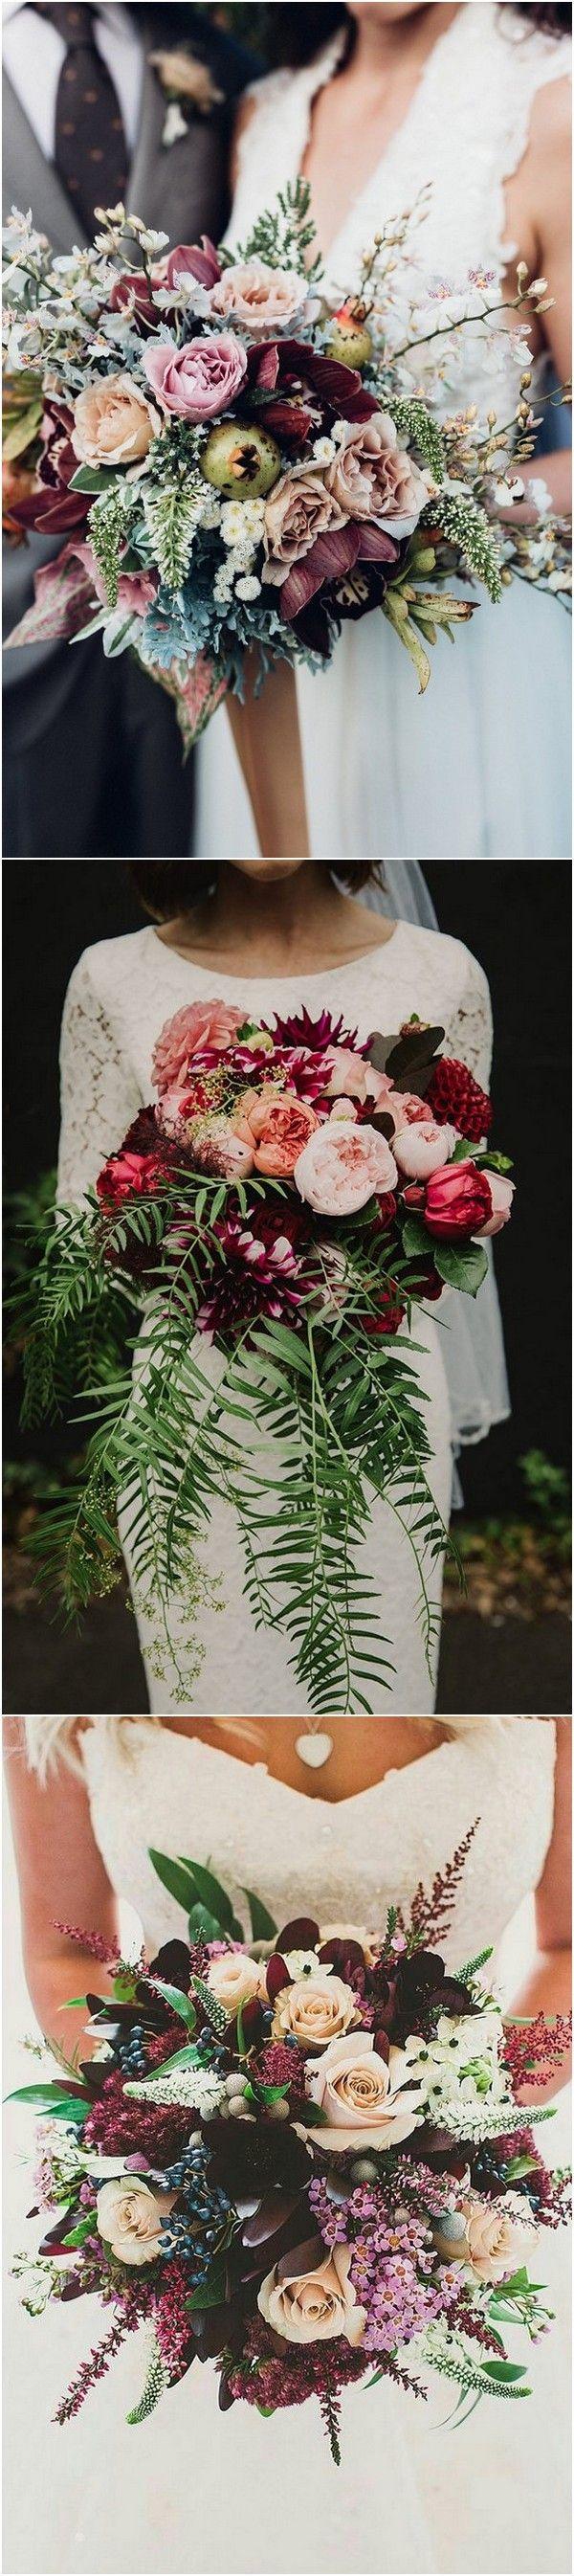 زفاف - Trending-15 Gorgeous Burgundy And Blush Wedding Bouquet Ideas - Page 2 Of 3